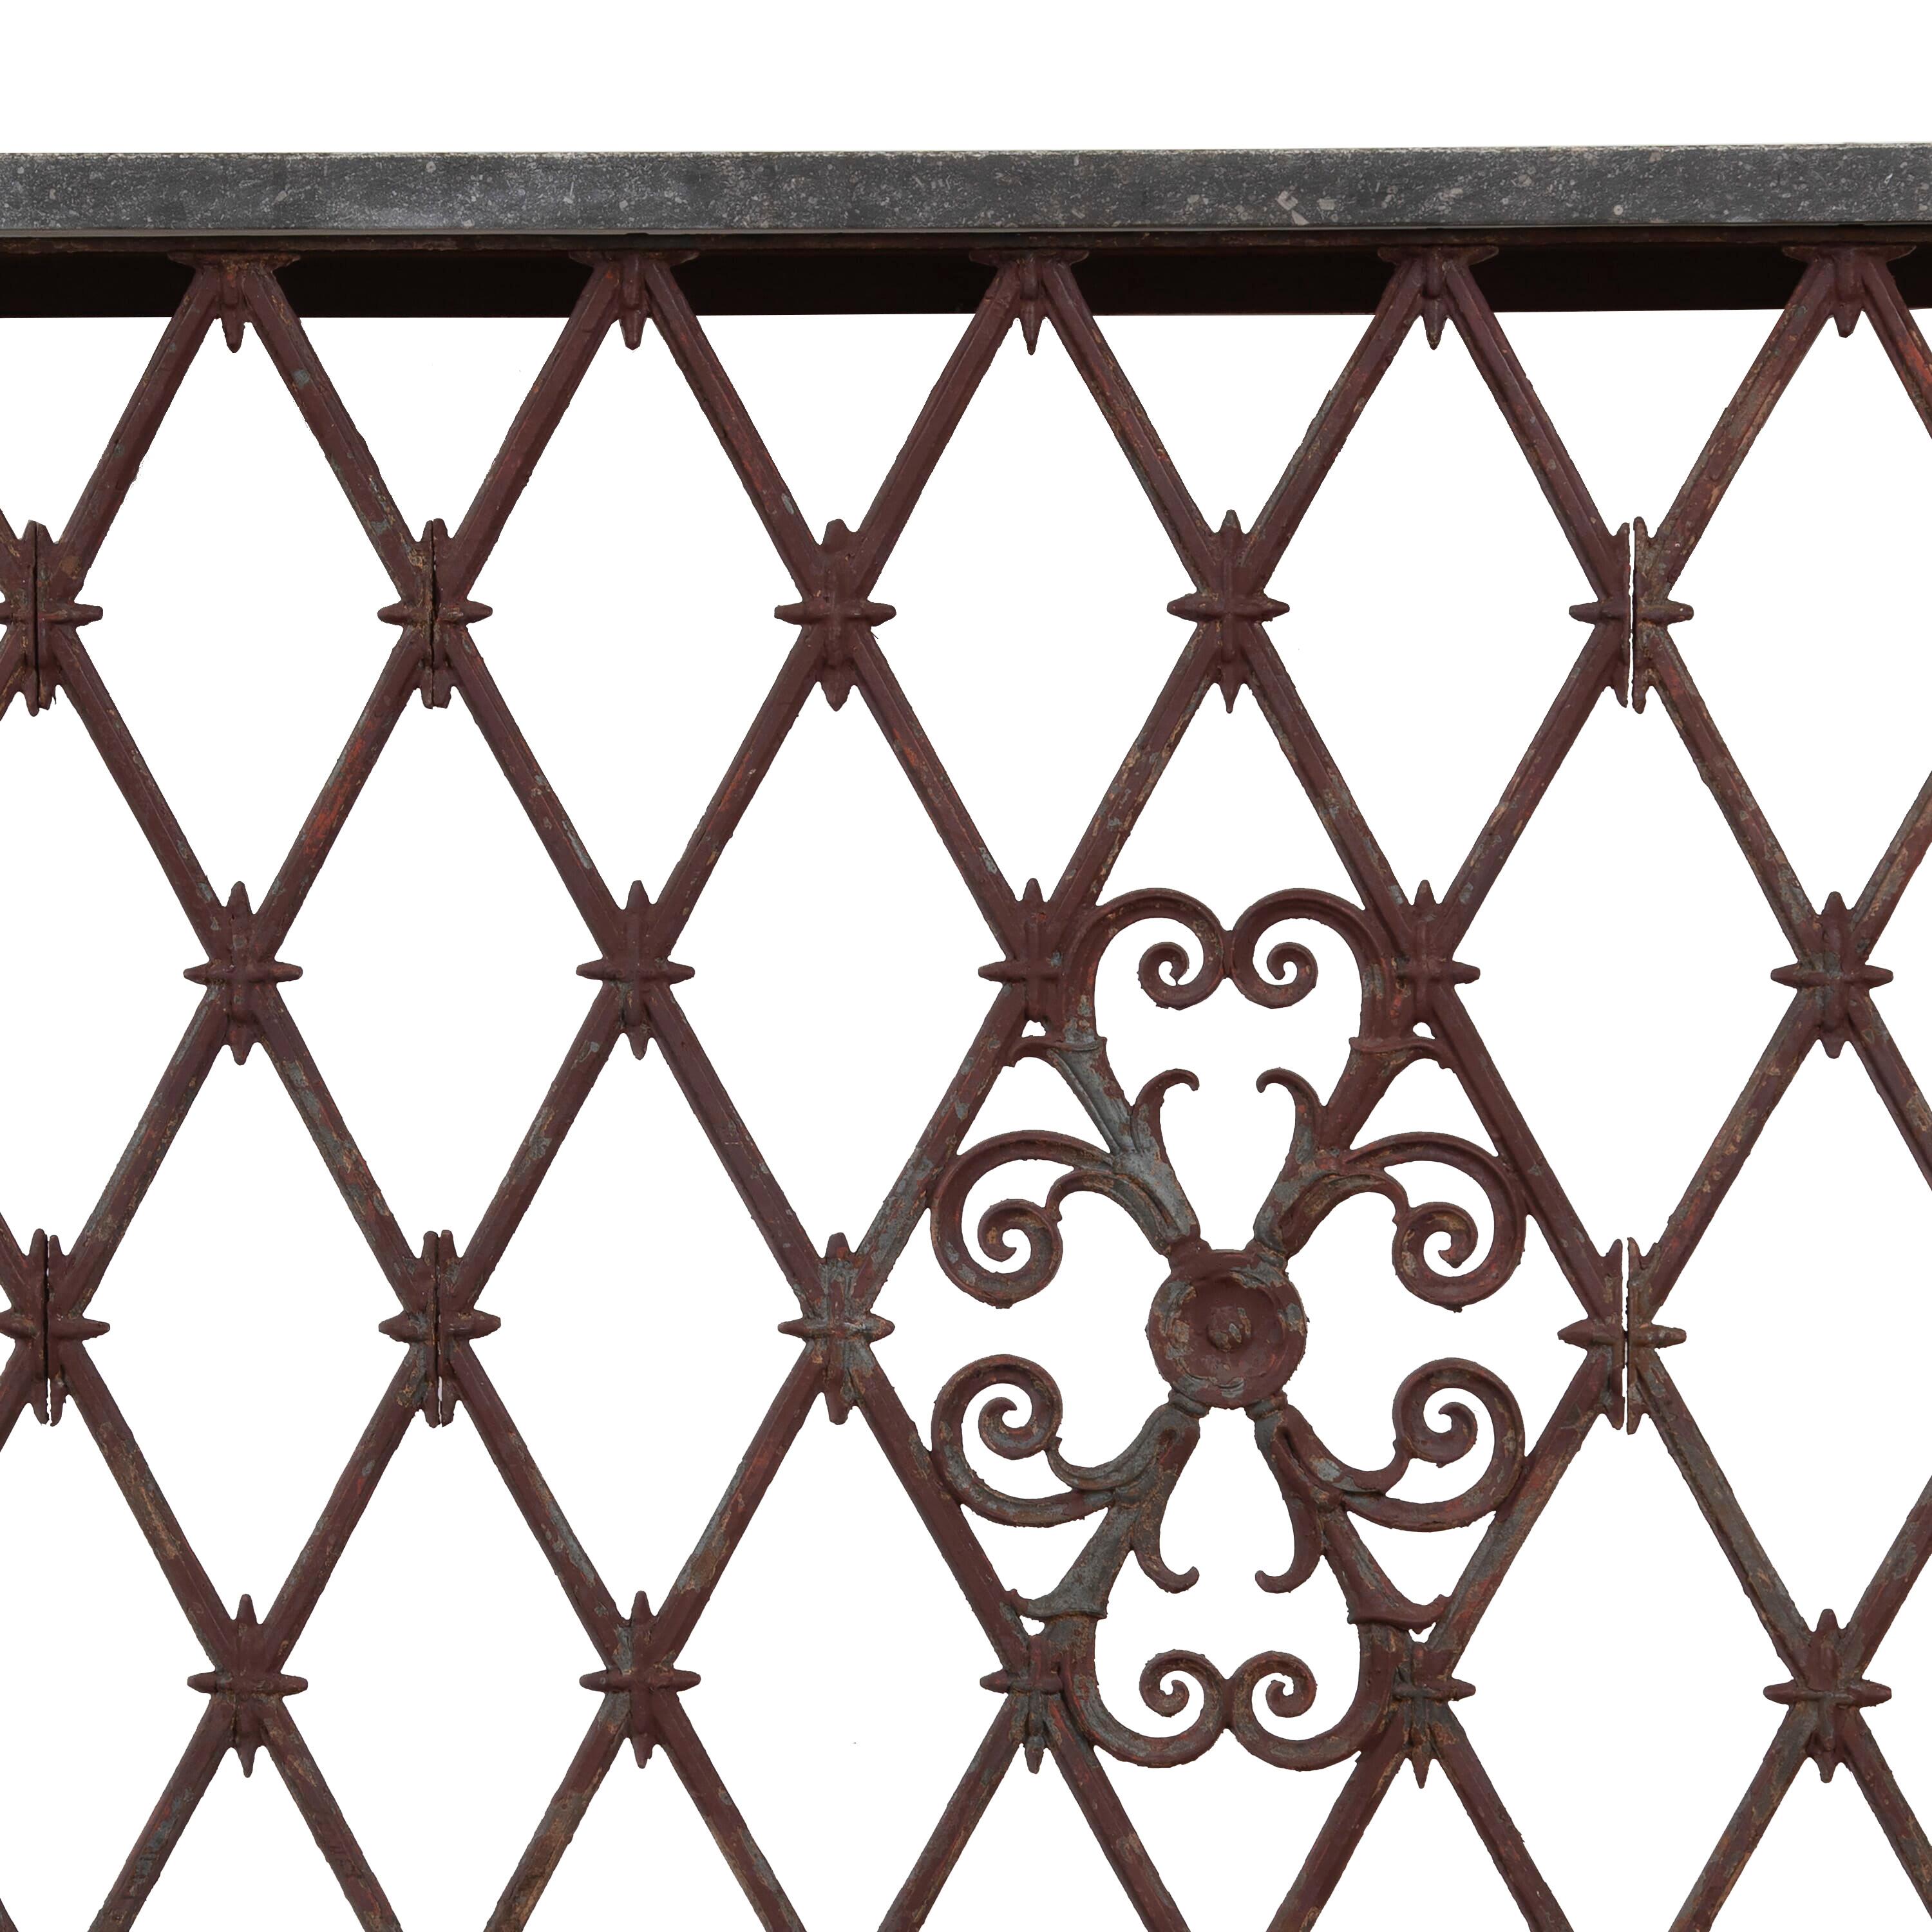 Balkon aus Eisen aus dem 19. Jahrhundert, der in eine Konsole umgewandelt wurde.
Es eignet sich gut als Kühlerabdeckung, kann aber sowohl innen als auch außen verwendet werden.
Mit einem dekorativen Harlekin-Muster in der Schmiedearbeit und